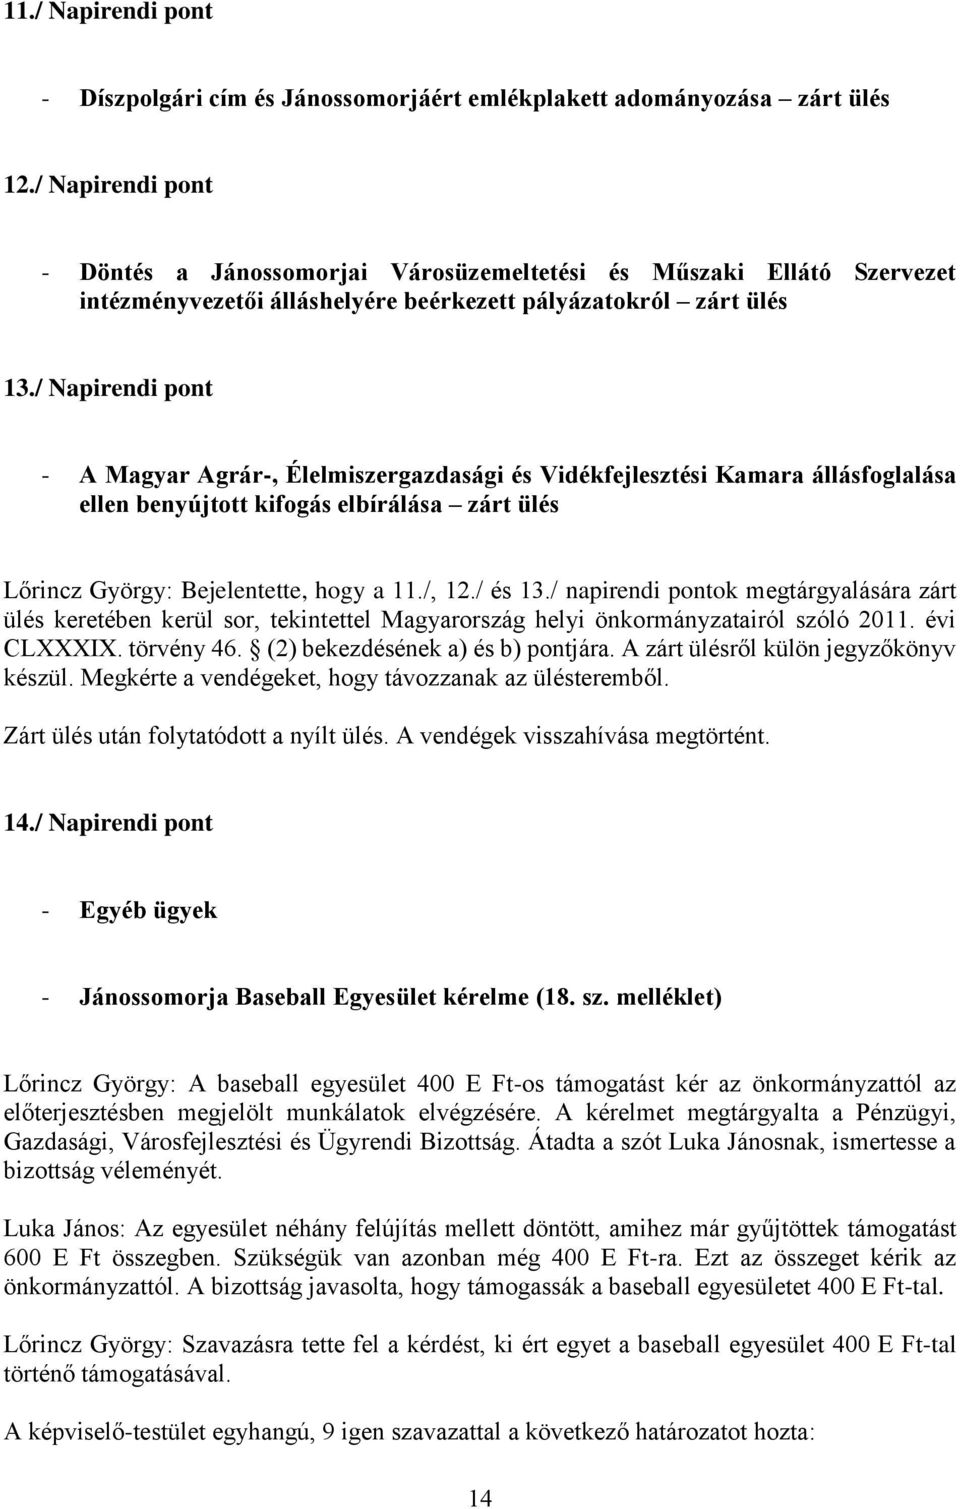 / Napirendi pont - A Magyar Agrár-, Élelmiszergazdasági és Vidékfejlesztési Kamara állásfoglalása ellen benyújtott kifogás elbírálása zárt ülés Lőrincz György: Bejelentette, hogy a 11./, 12./ és 13.